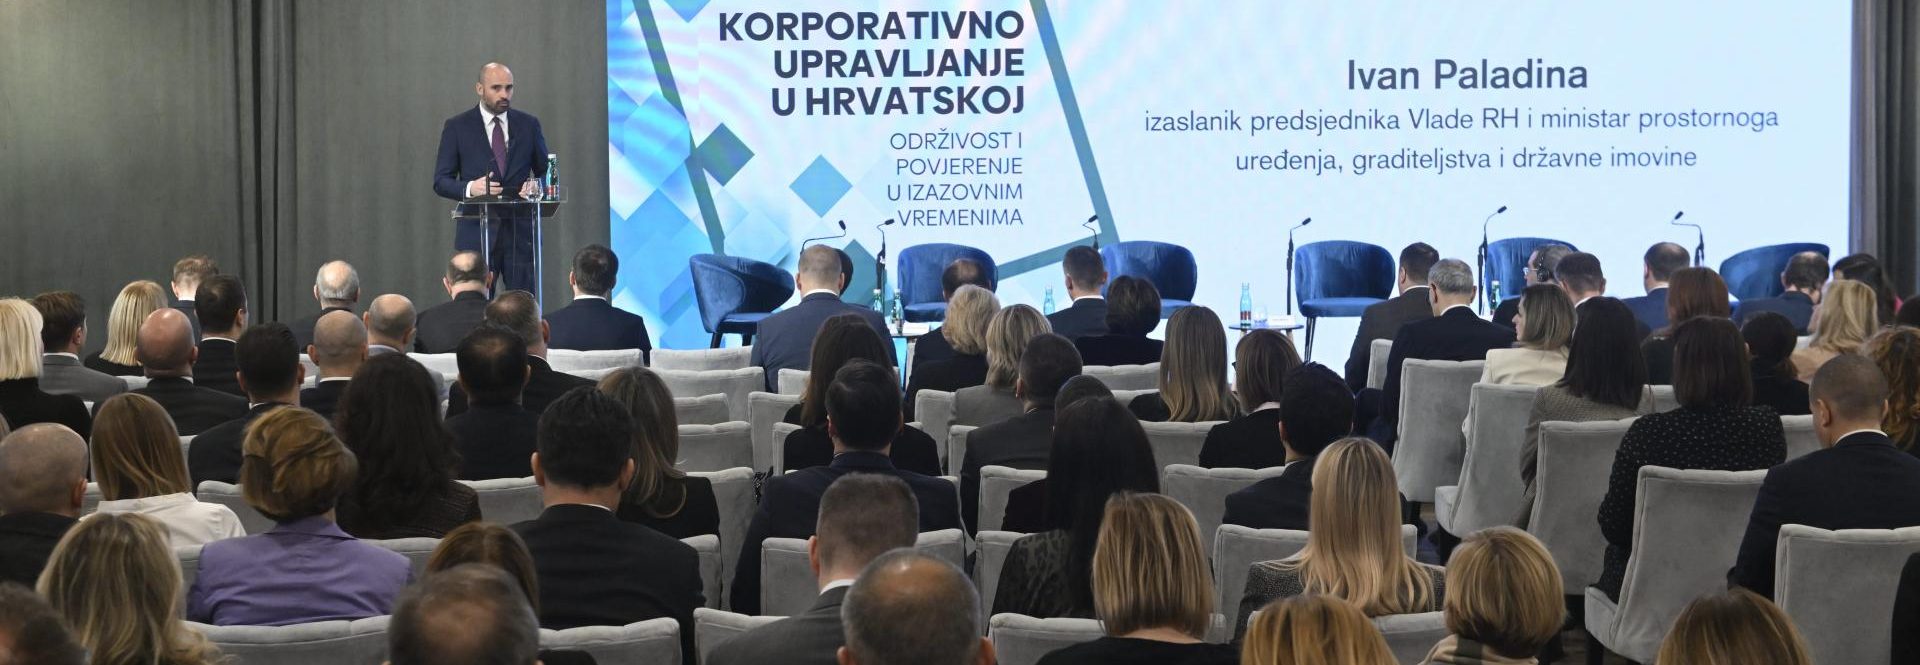 Korporativno upravljanje u Hrvatskoj – Održivost i povjerenje u izazovnim vremenima